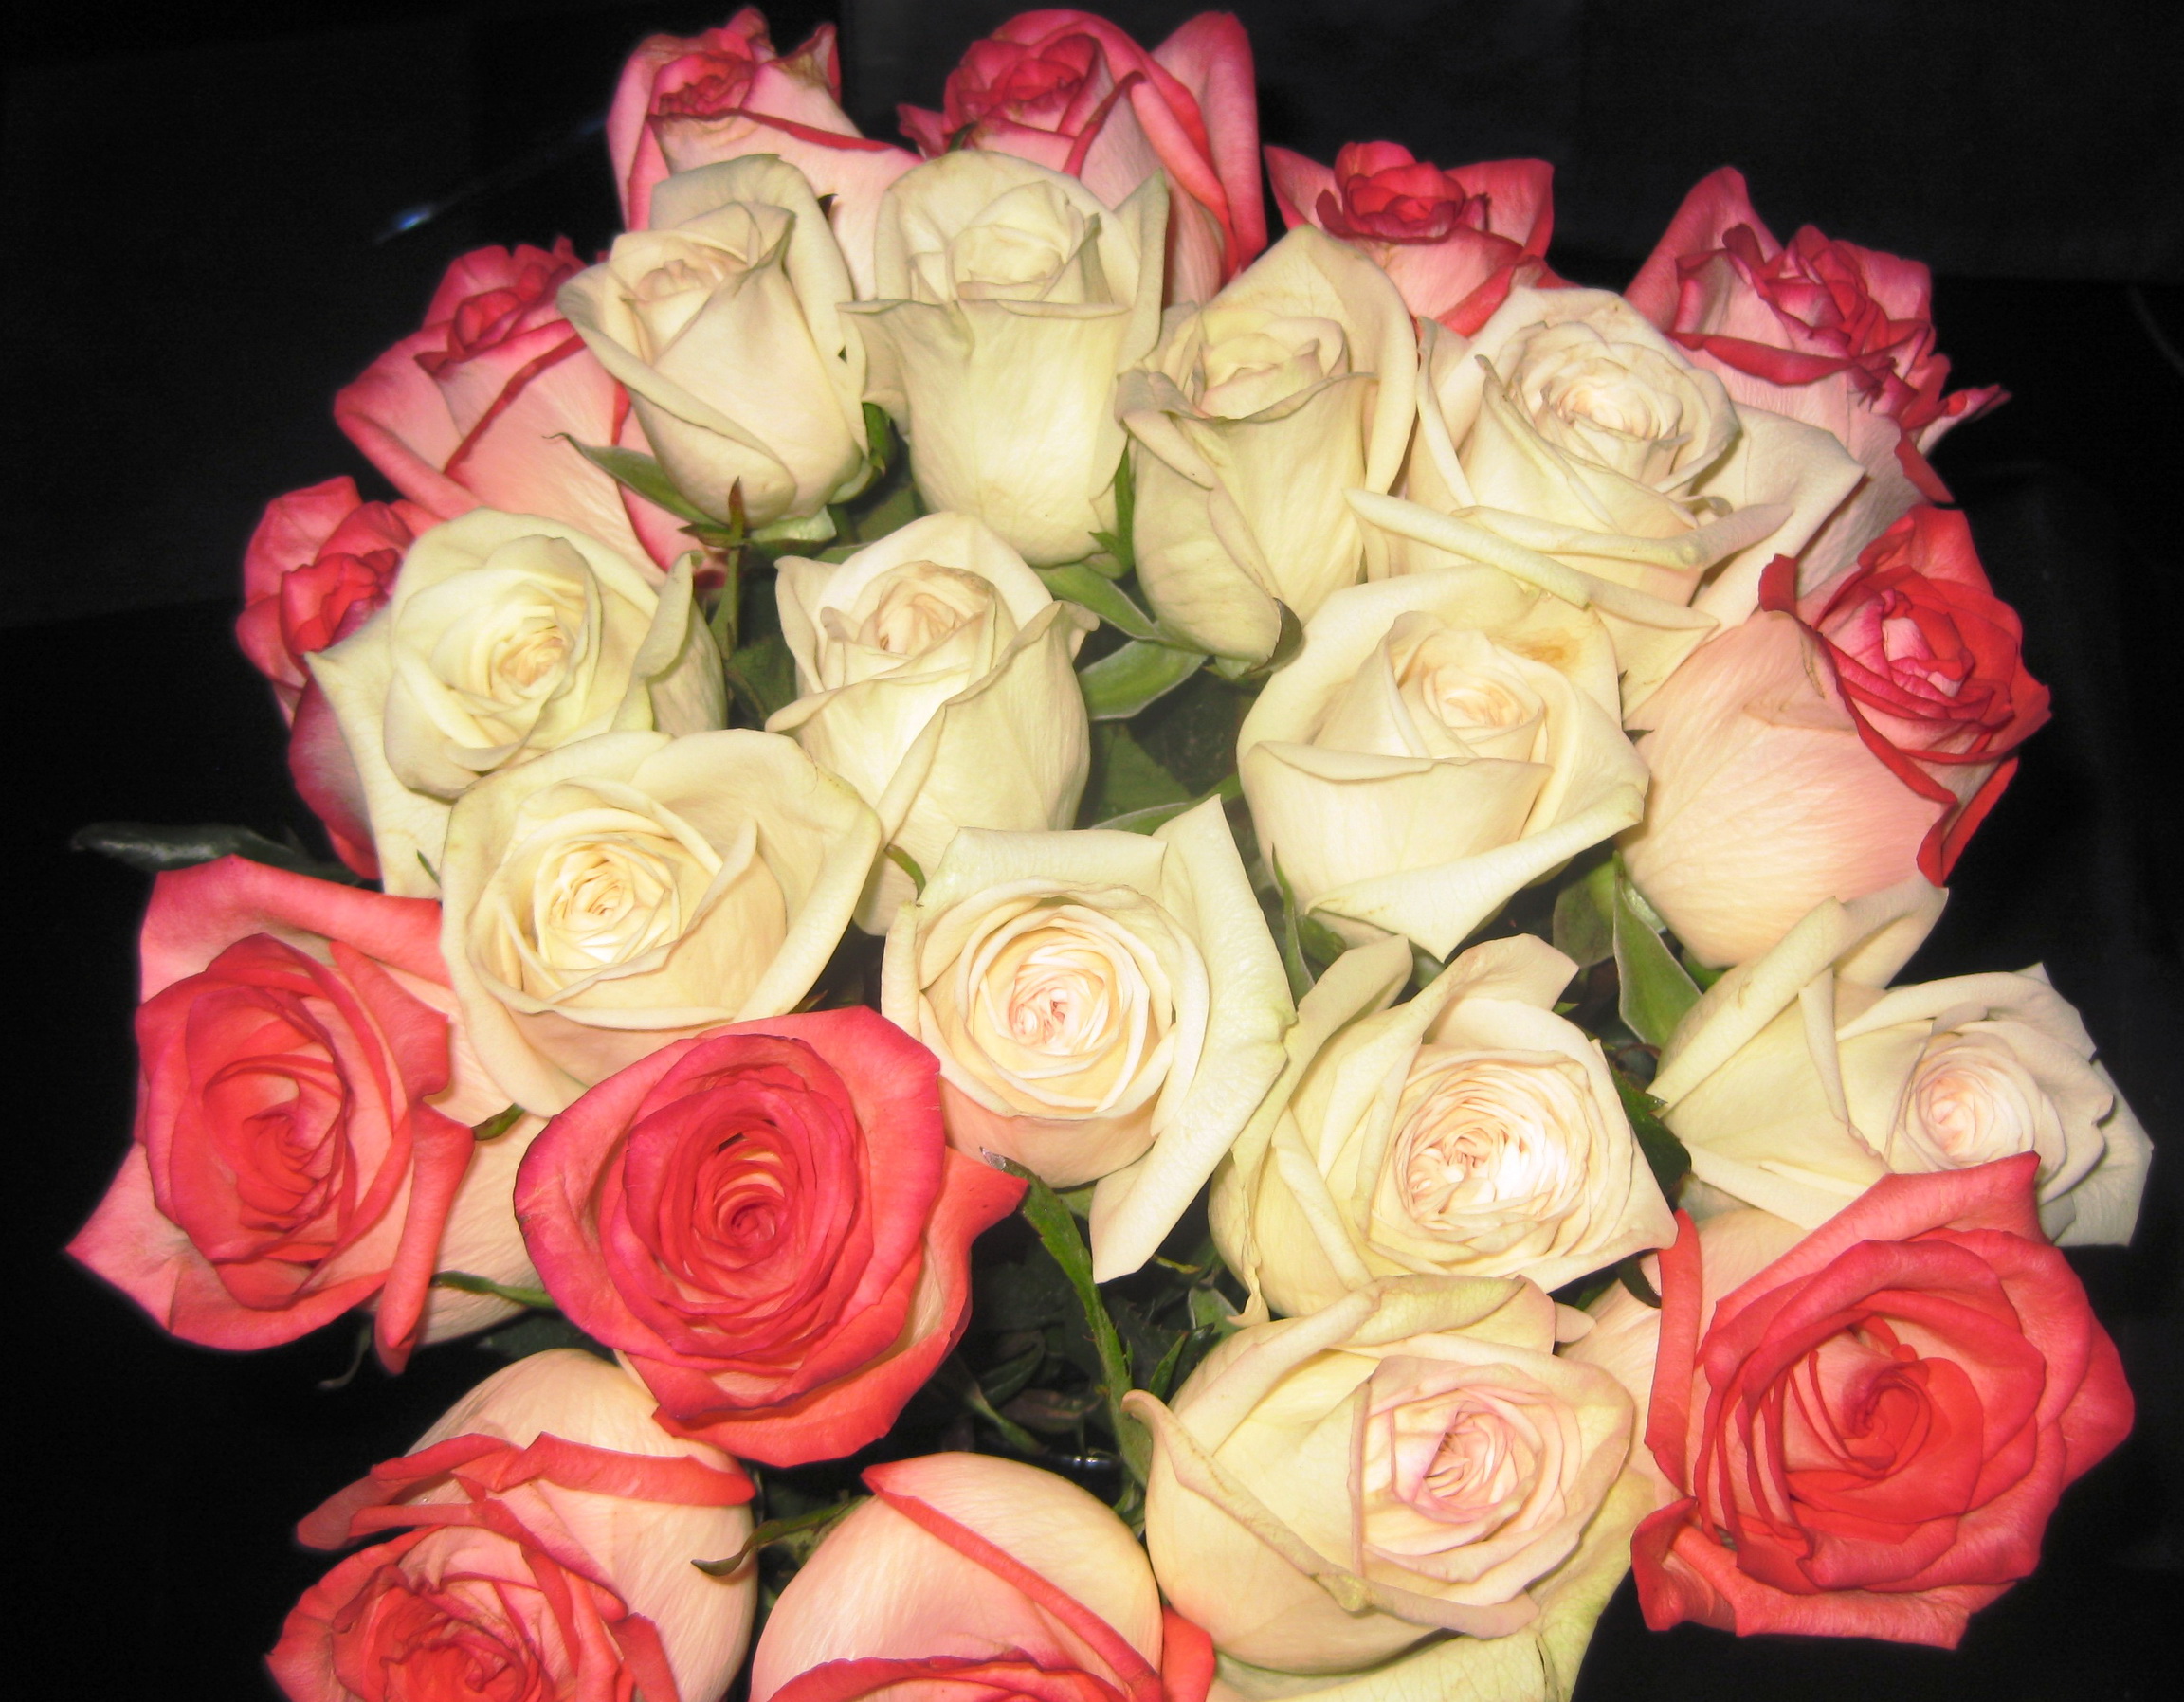 Фото реальных букетов цветов дома. Красивый букет роз. Красивый букет дома. Живые розы букет. Букет роз дома.